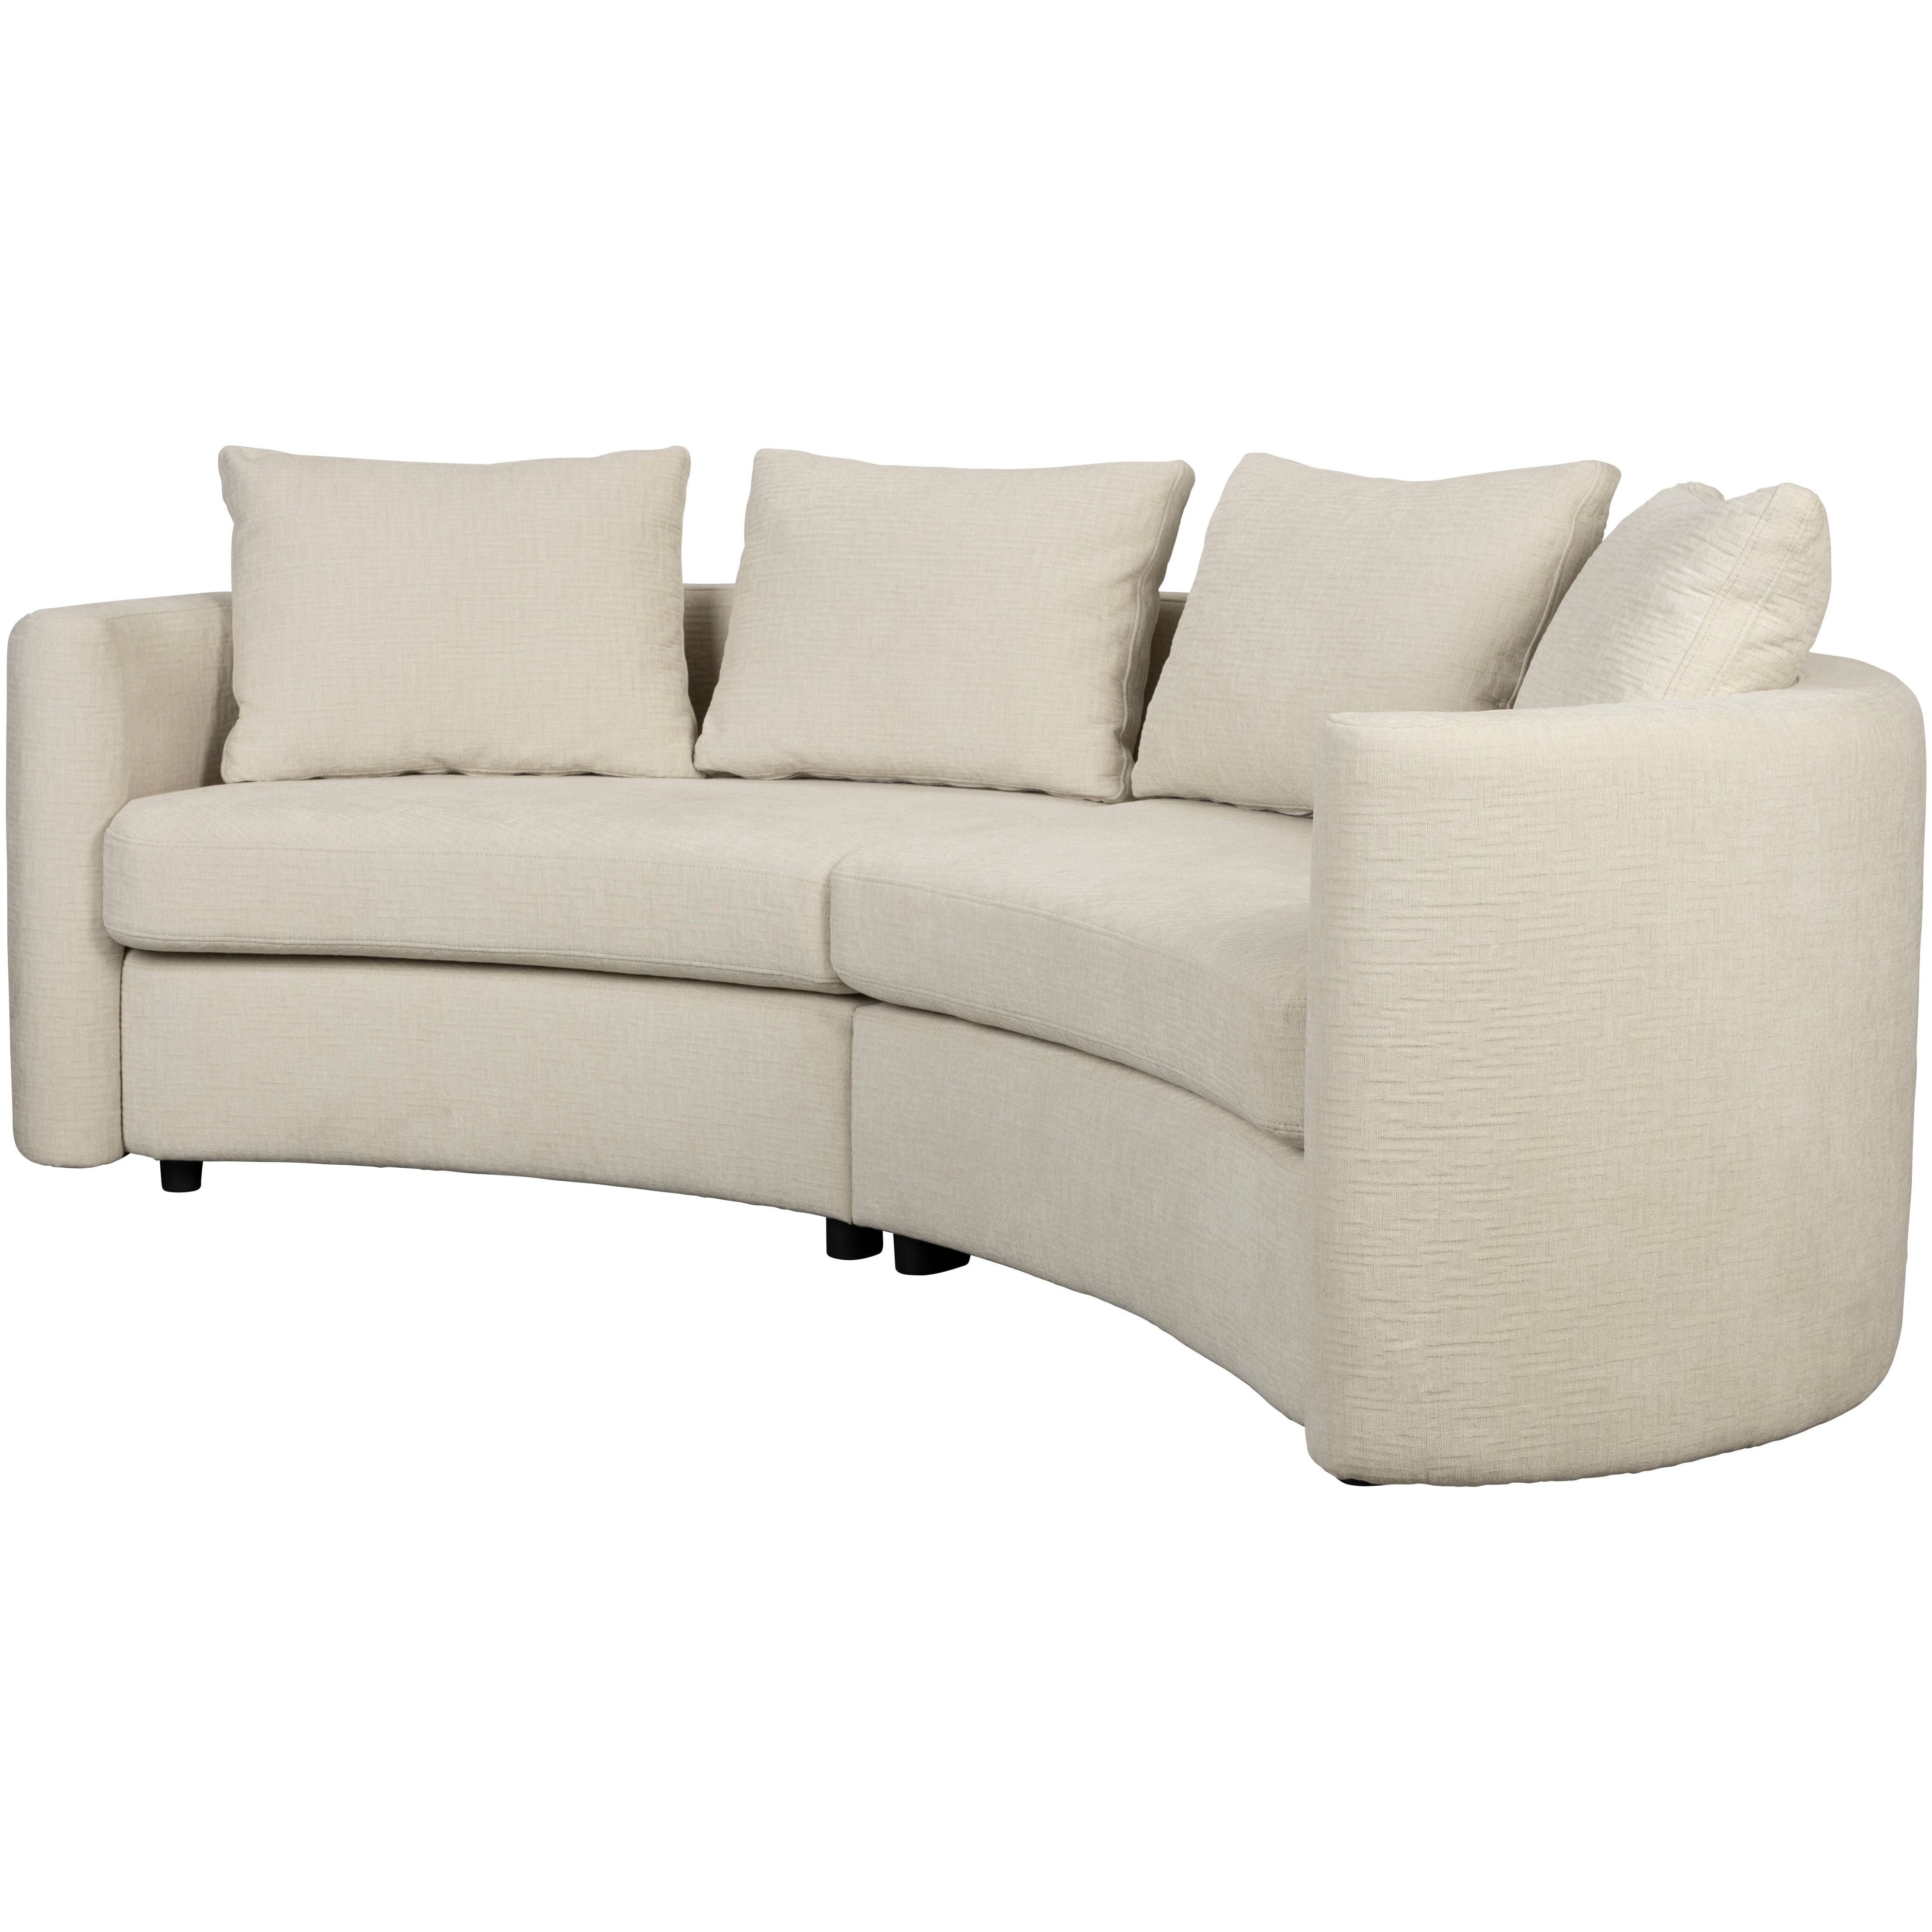 Sofa fernon off white